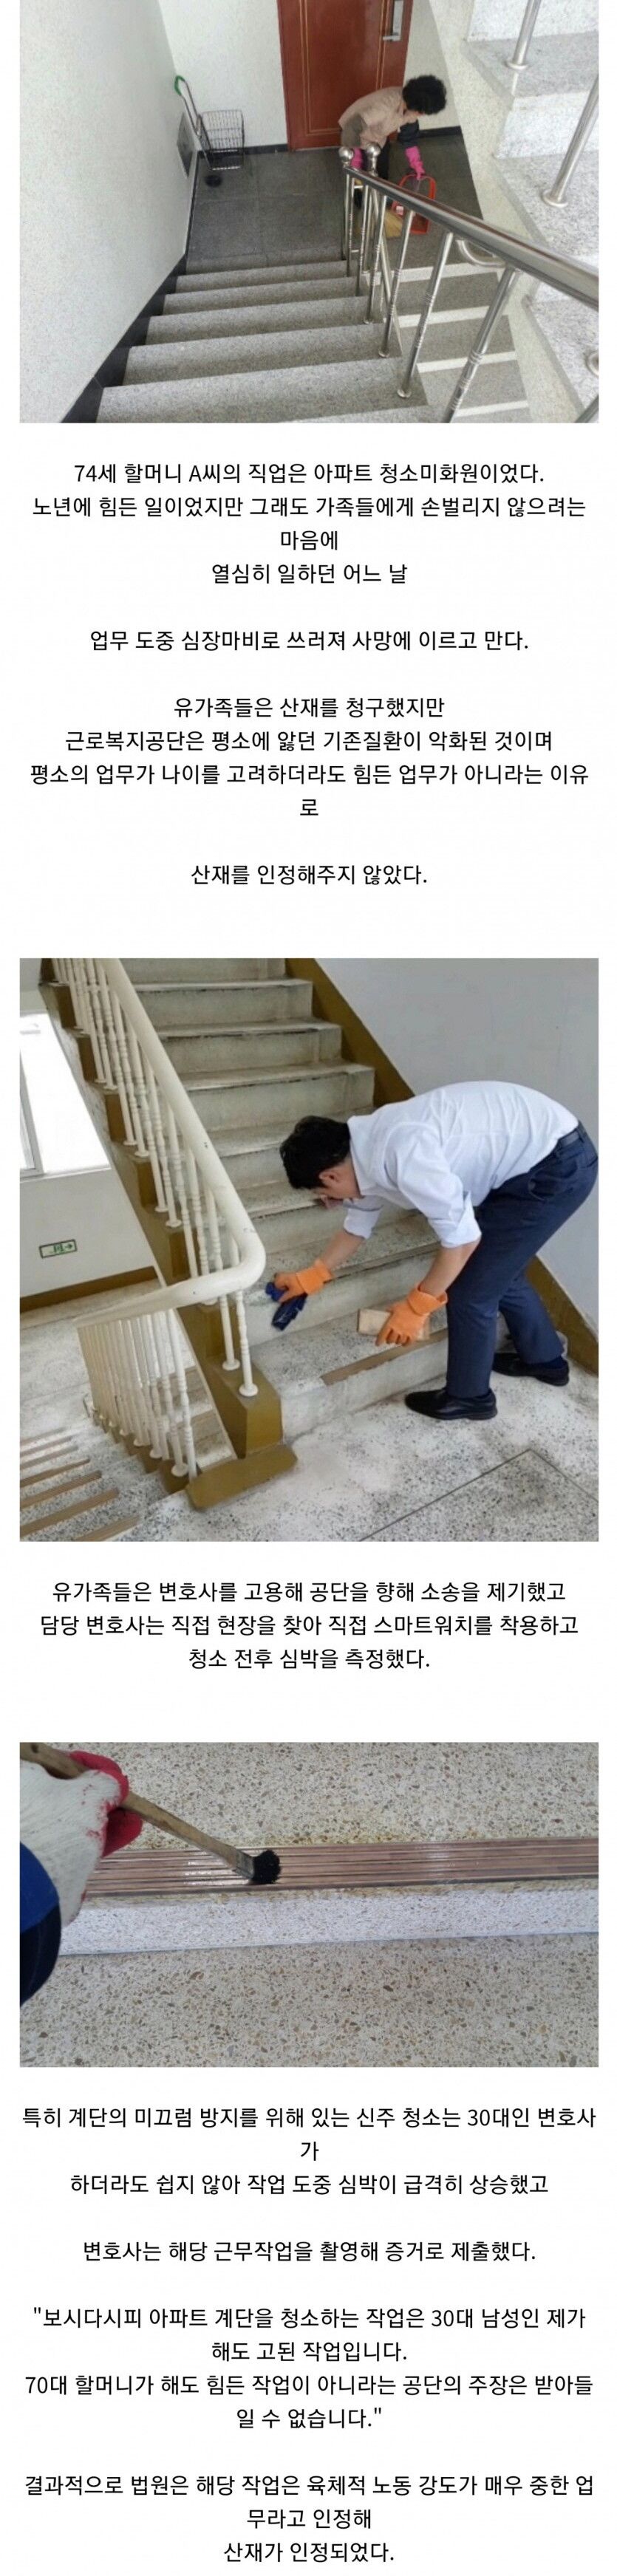 30대 변호사가 아파트 계단을 청소한 이유(0)